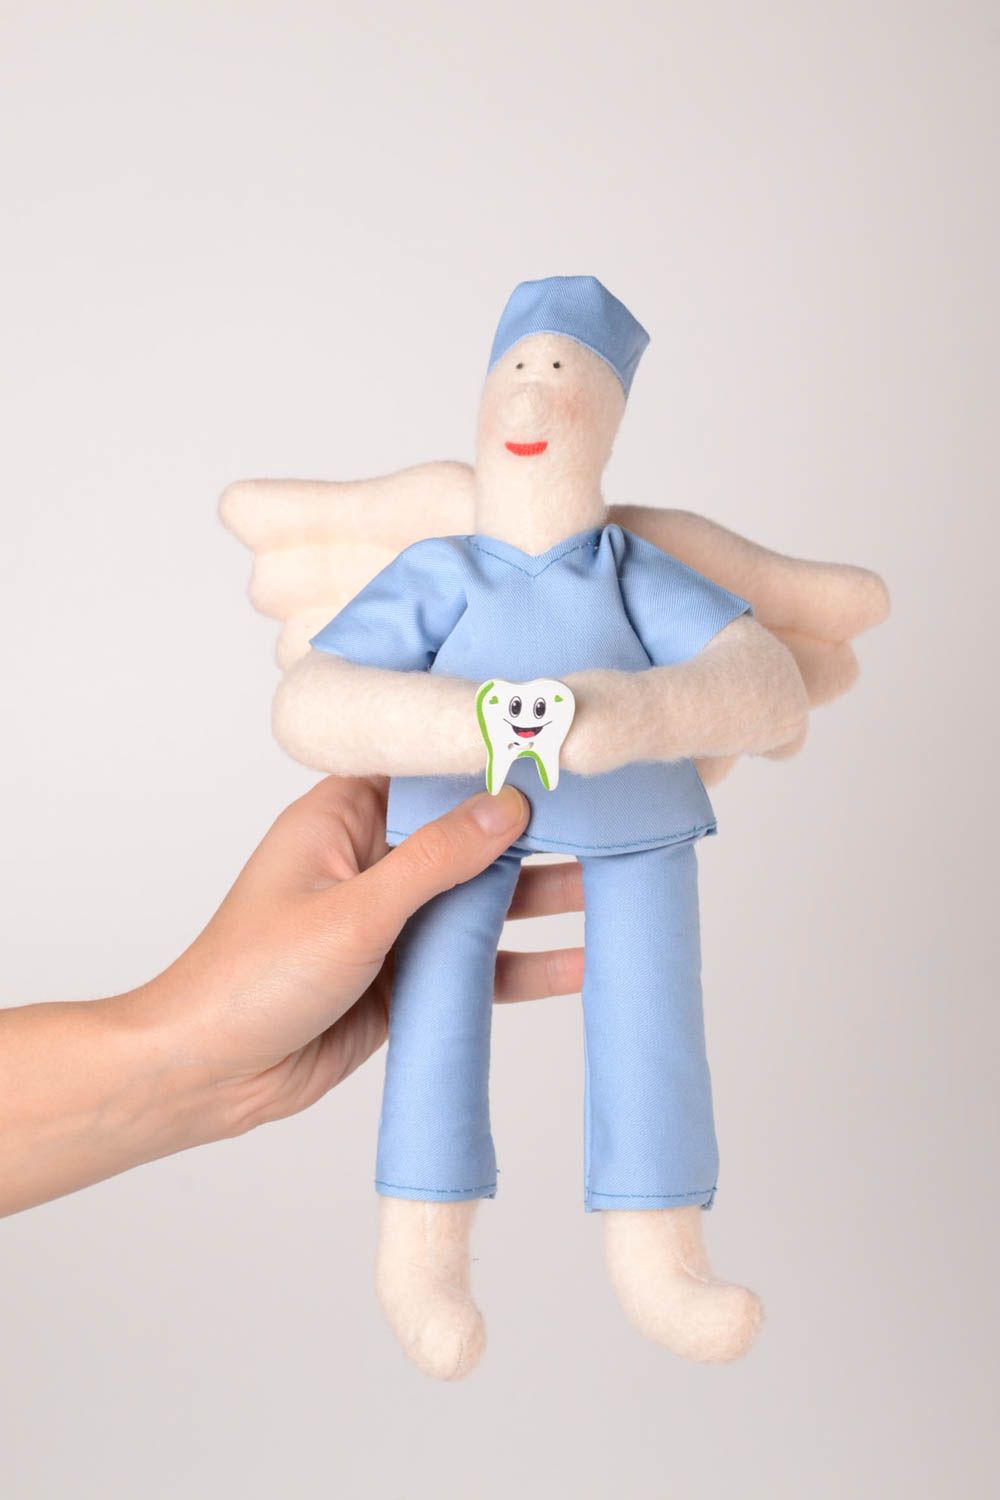 Детская игрушка ручной работы игрушка из флиса мягкая игрушка кукла врач ангел фото 2